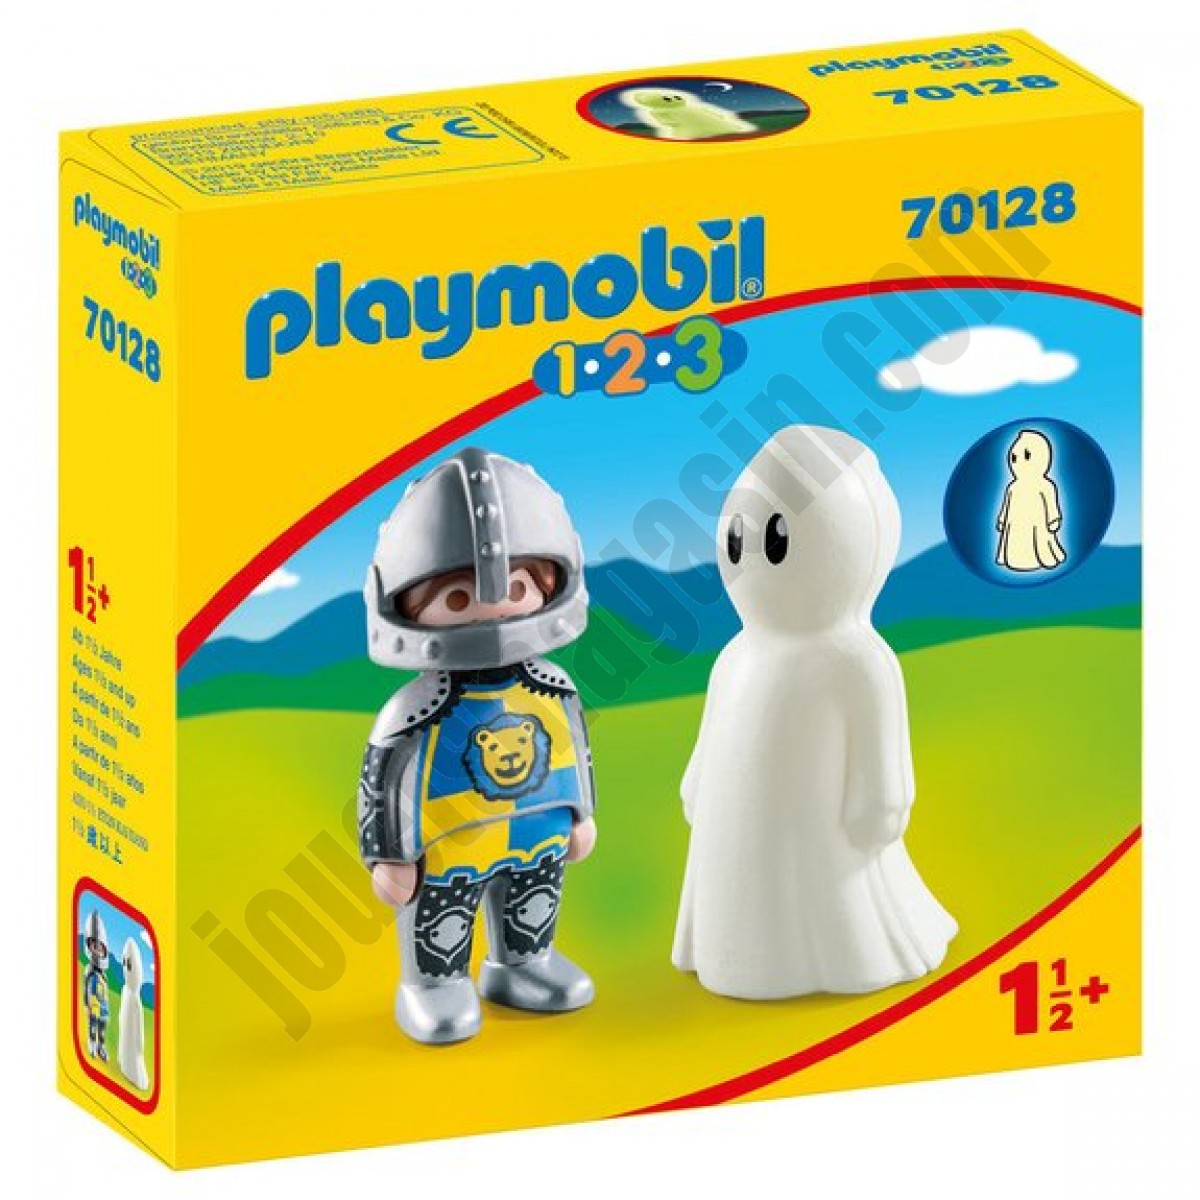 Chevalier et fantôme Playmobil 1.2.3 70128 ◆◆◆ Nouveau - Chevalier et fantôme Playmobil 1.2.3 70128 ◆◆◆ Nouveau